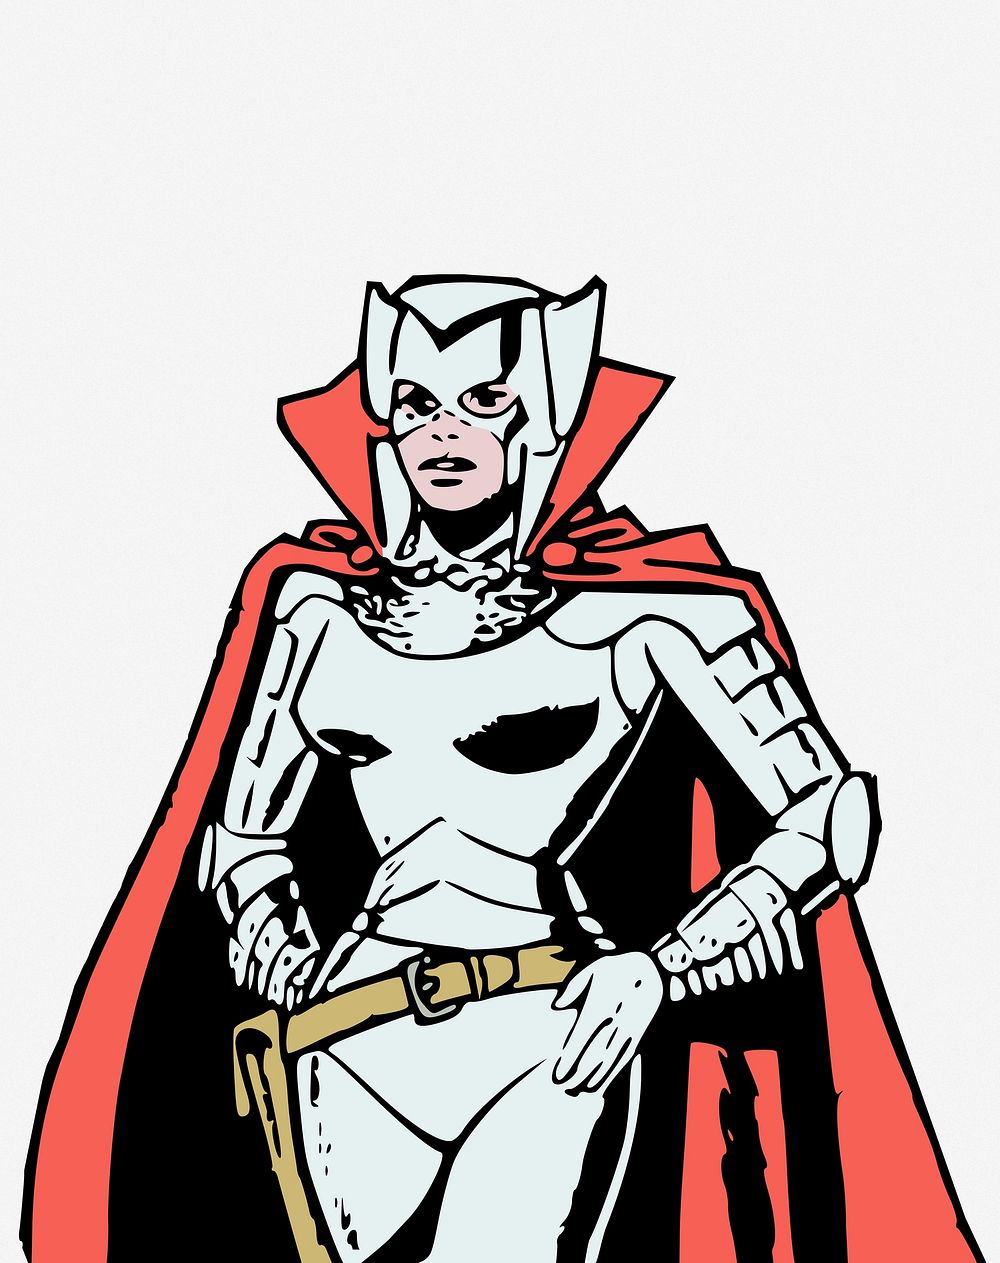 Woman superhero collage element vector. Free public domain CC0 image.